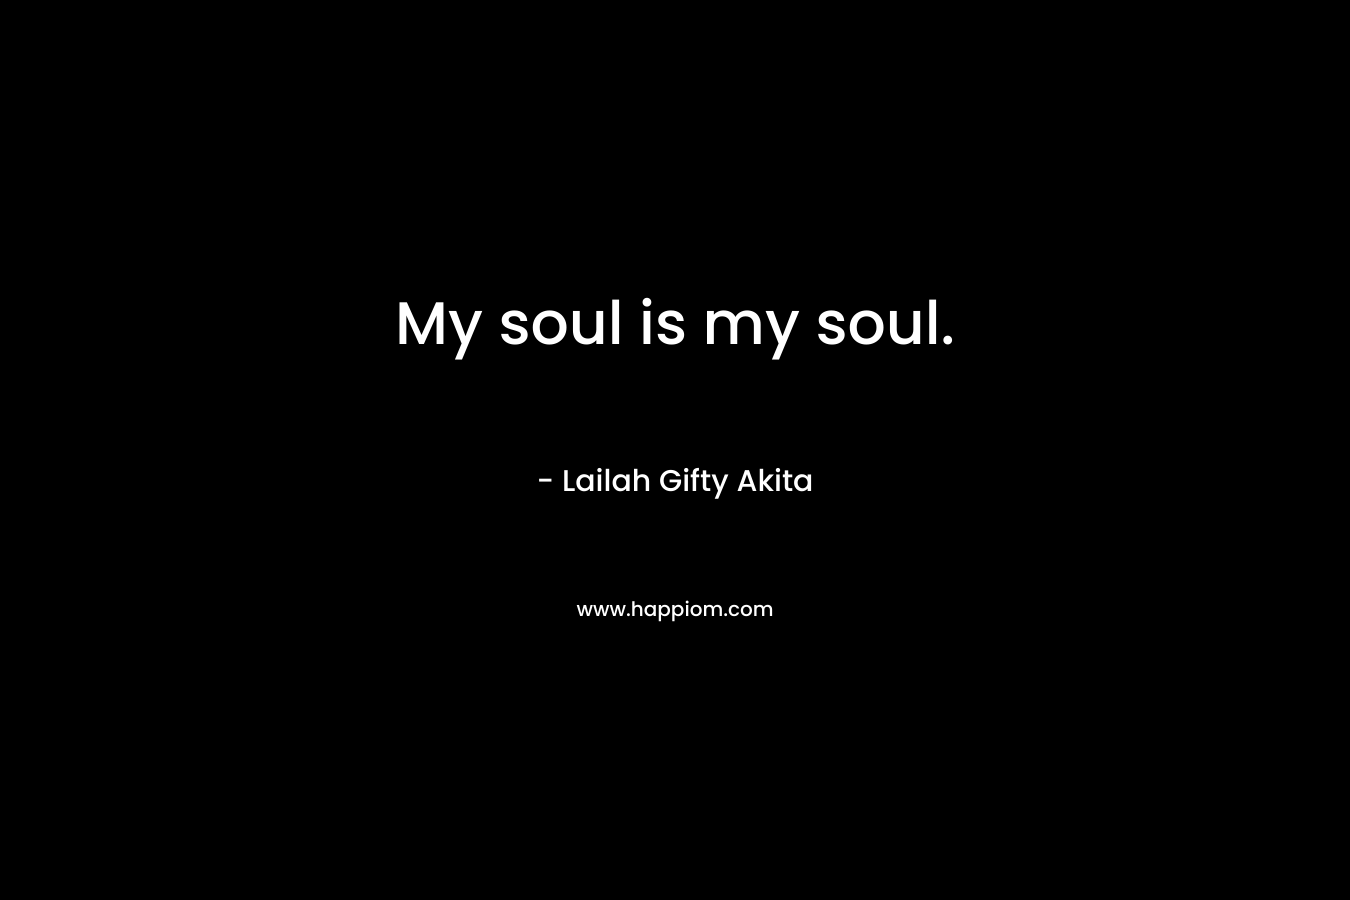 My soul is my soul.